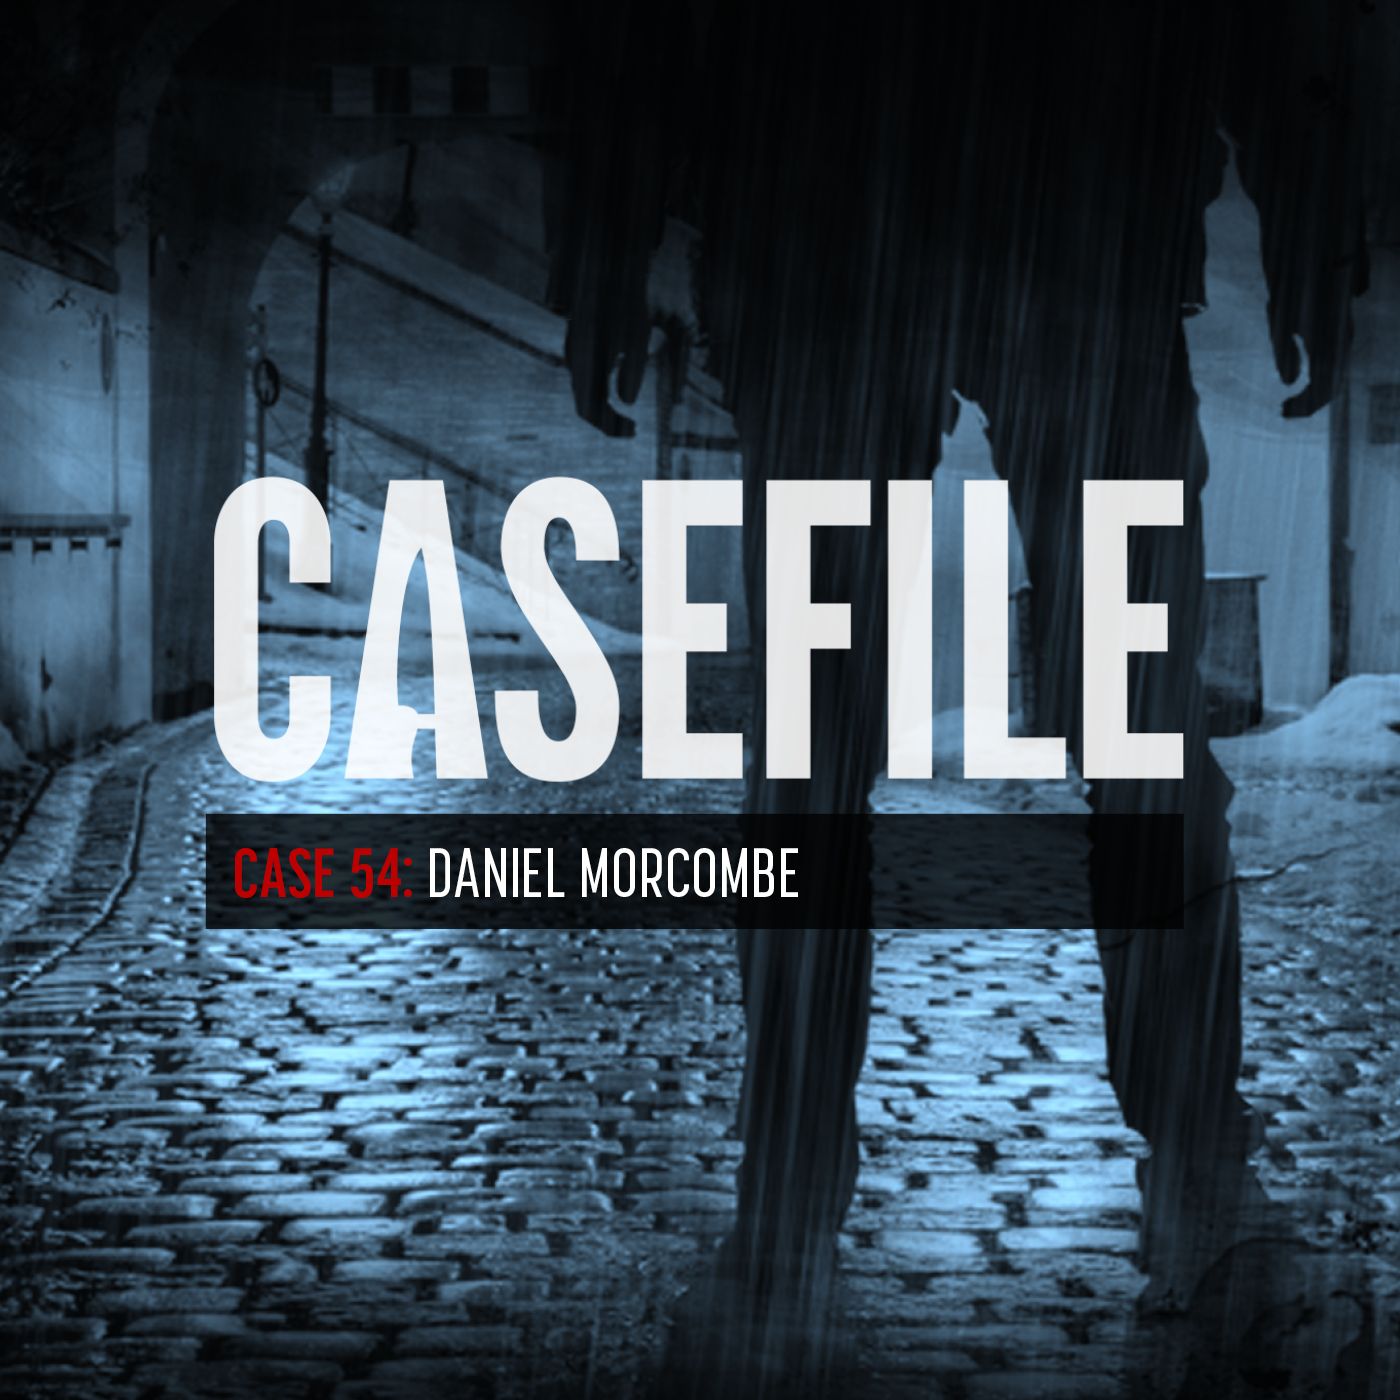 Case 54: Daniel Morcombe